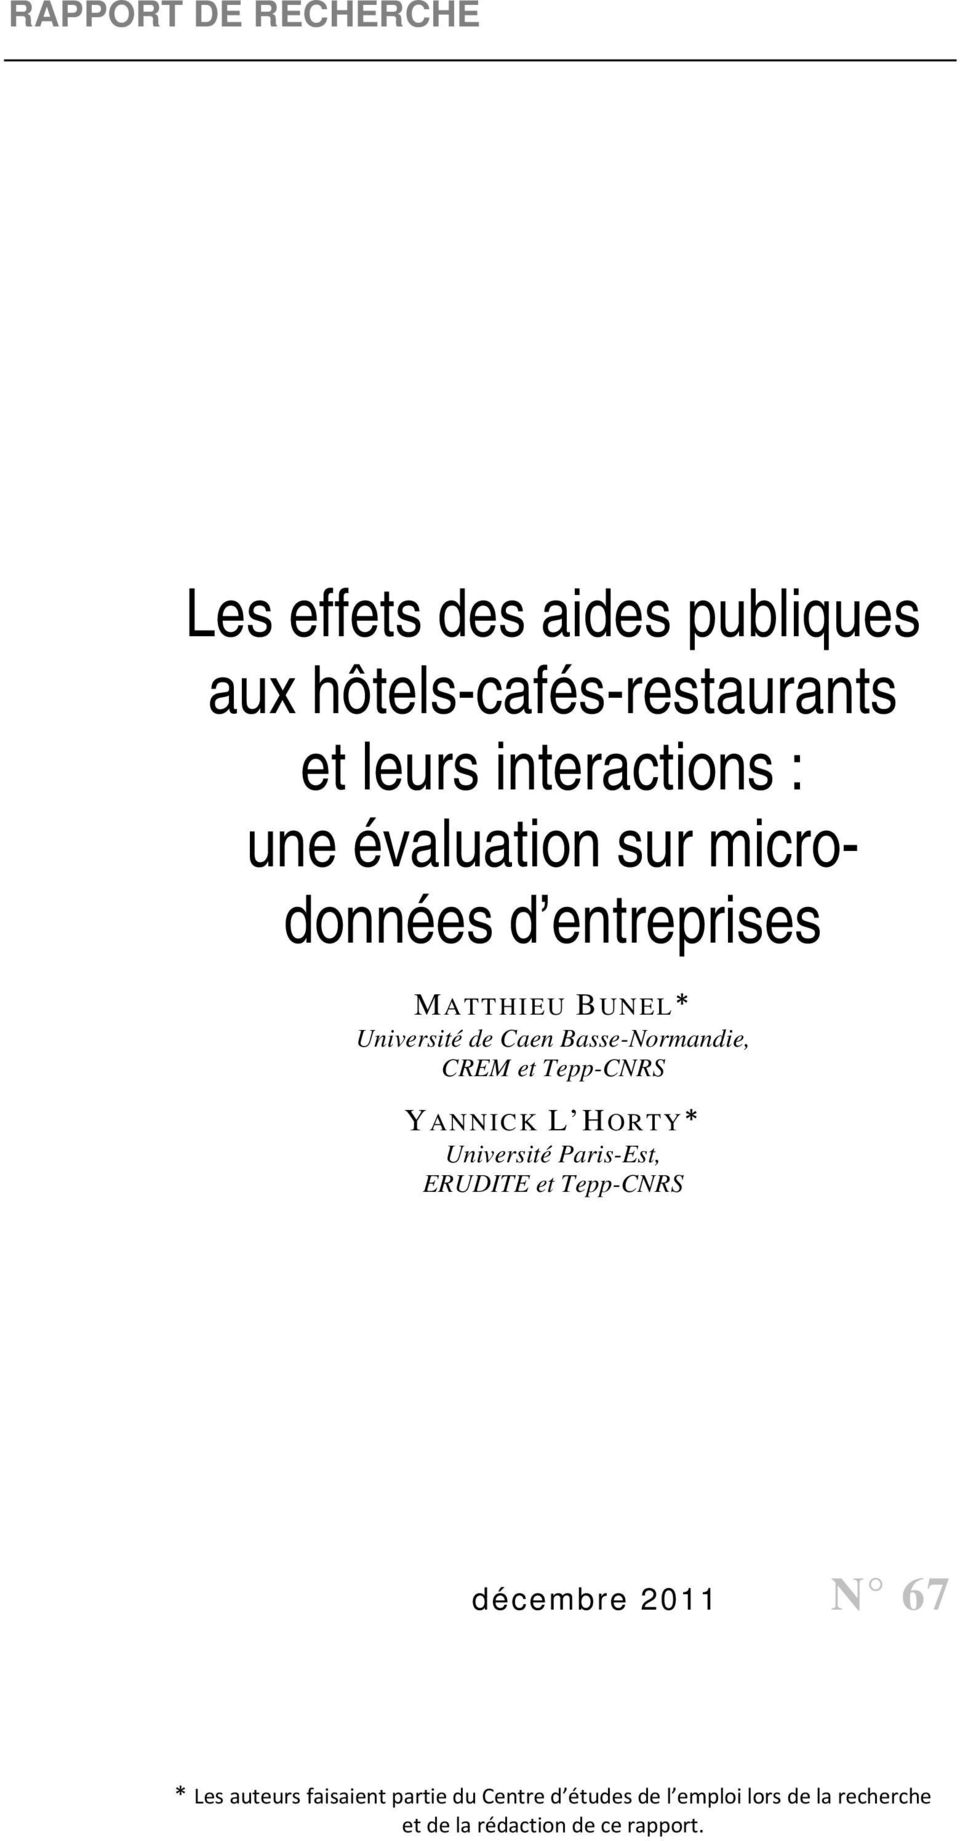 CREM et Tepp-CNRS YANNICK L HORTY* Université Paris-Est, ERUDITE et Tepp-CNRS décembre 2011 N 67 * Les